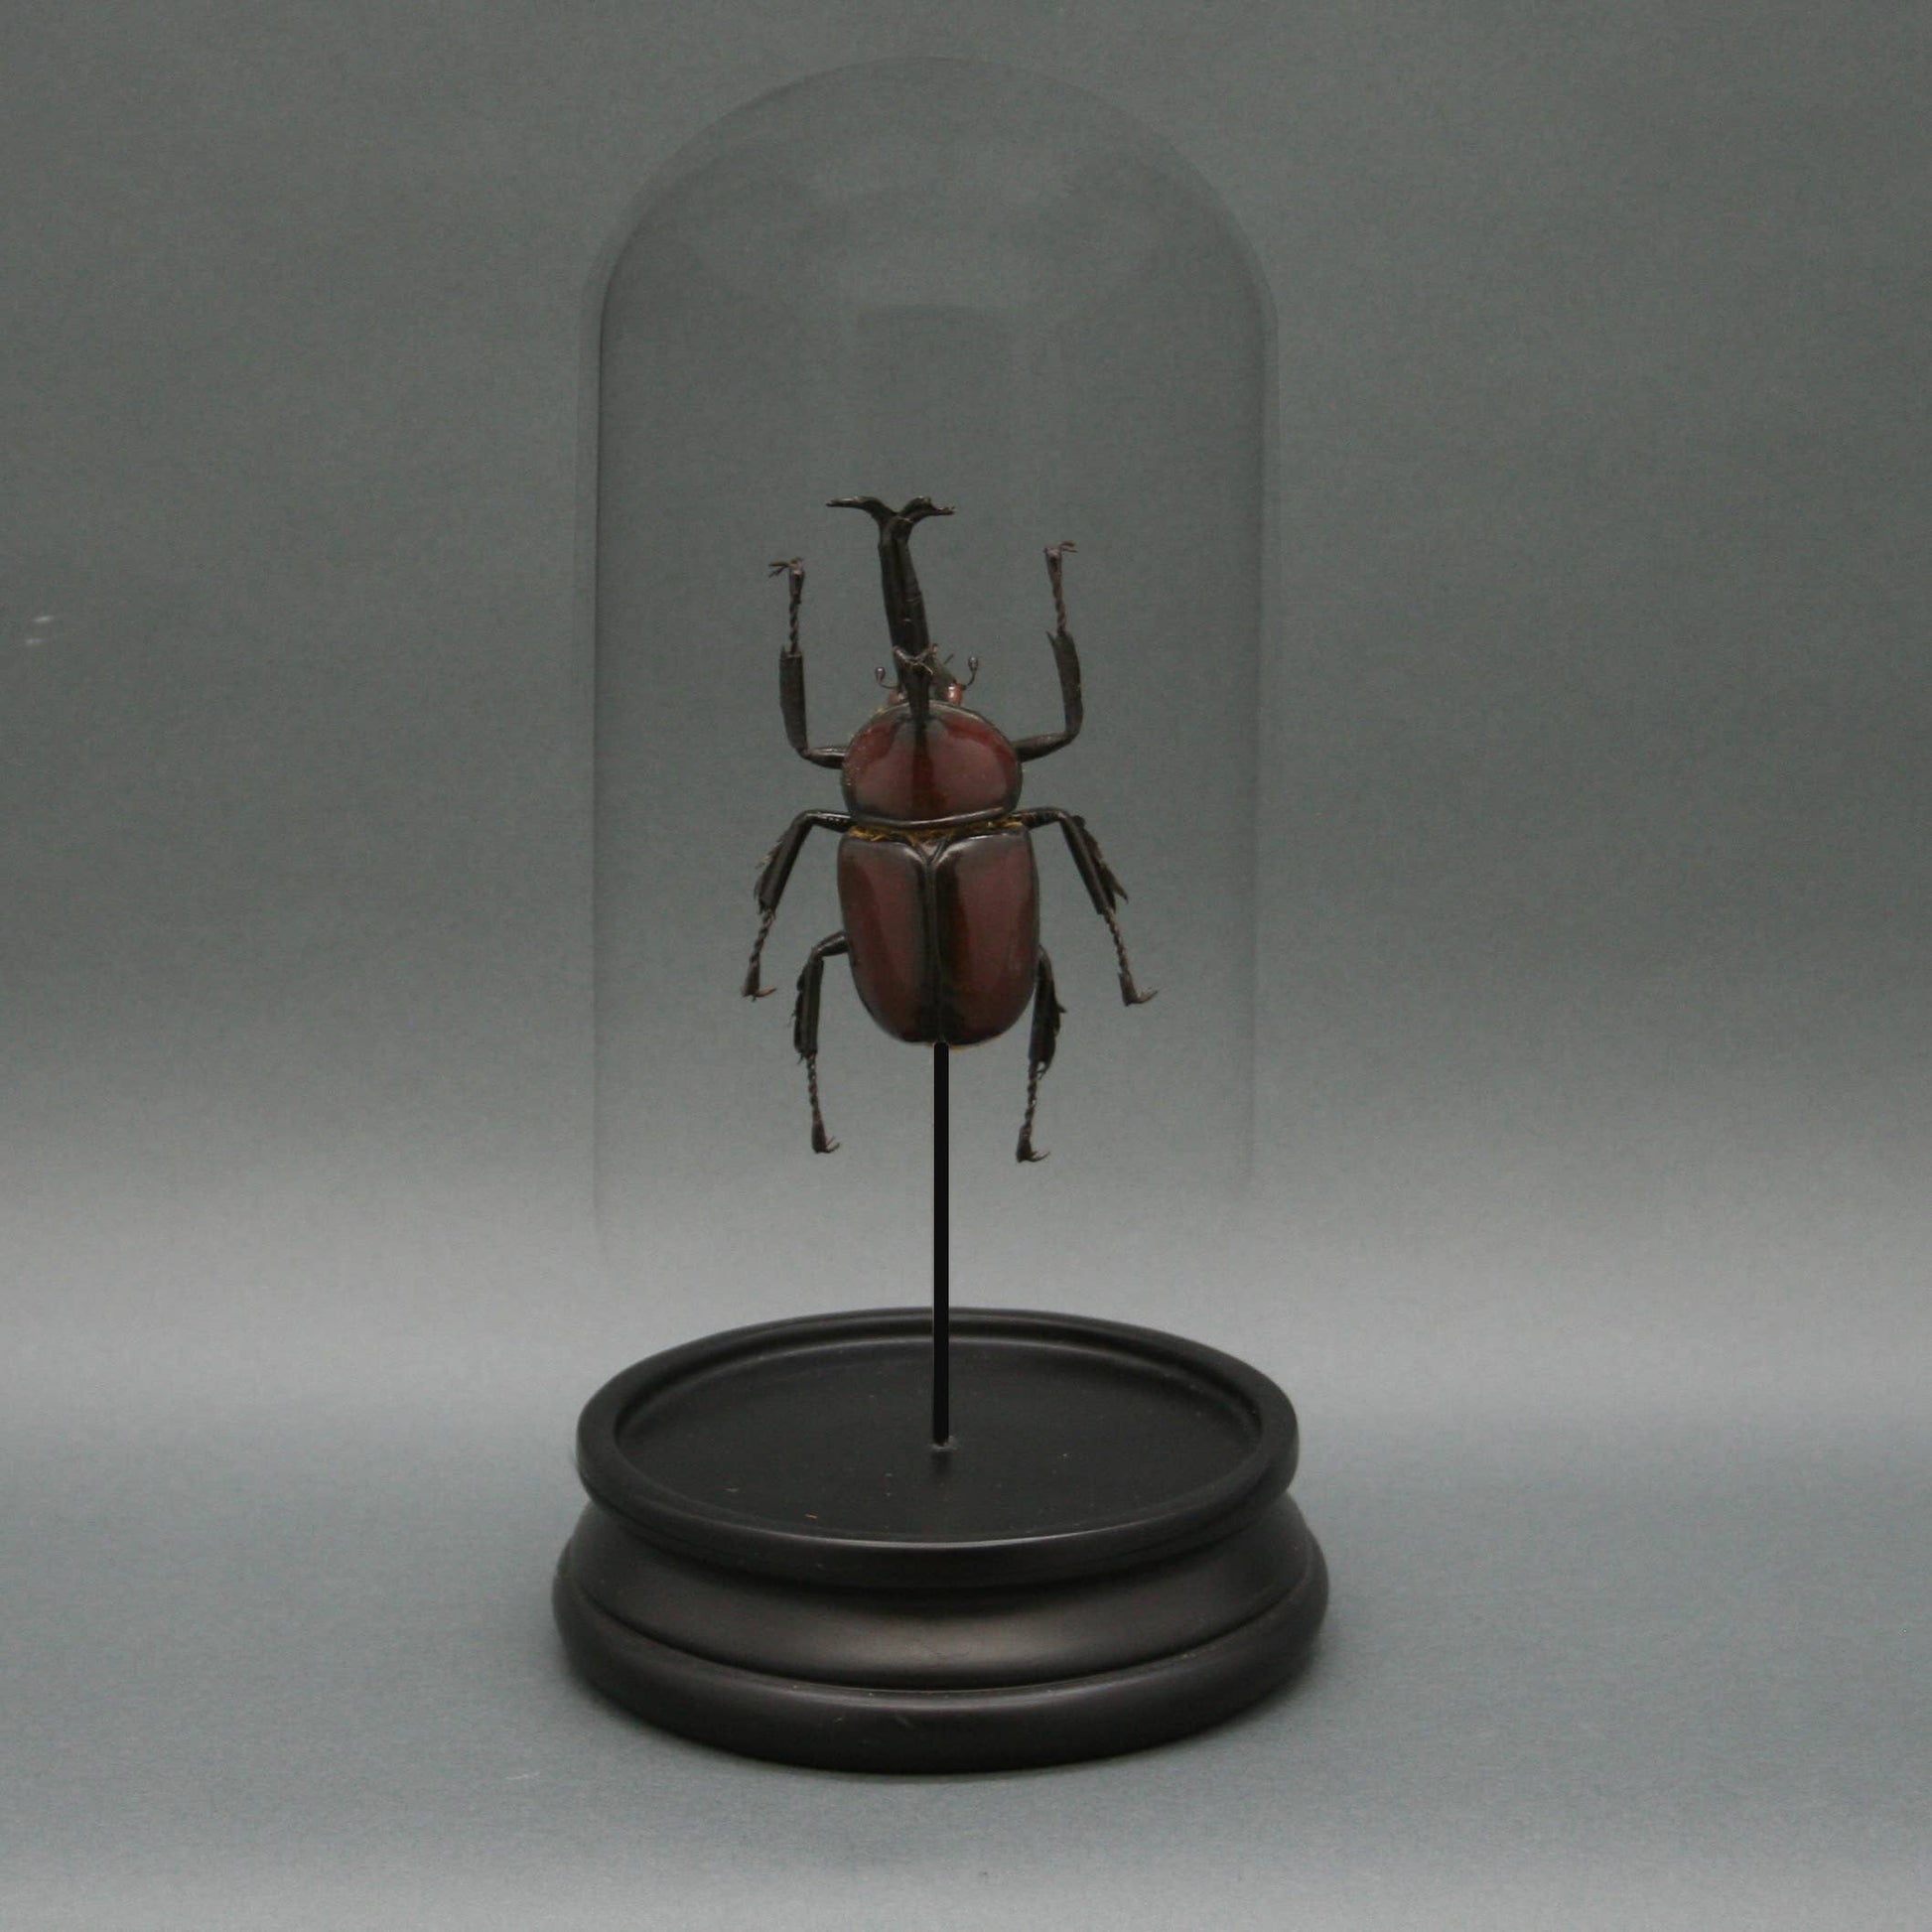 Rhinoceros Beetle Glass Cloche - Stemcell Science Shop